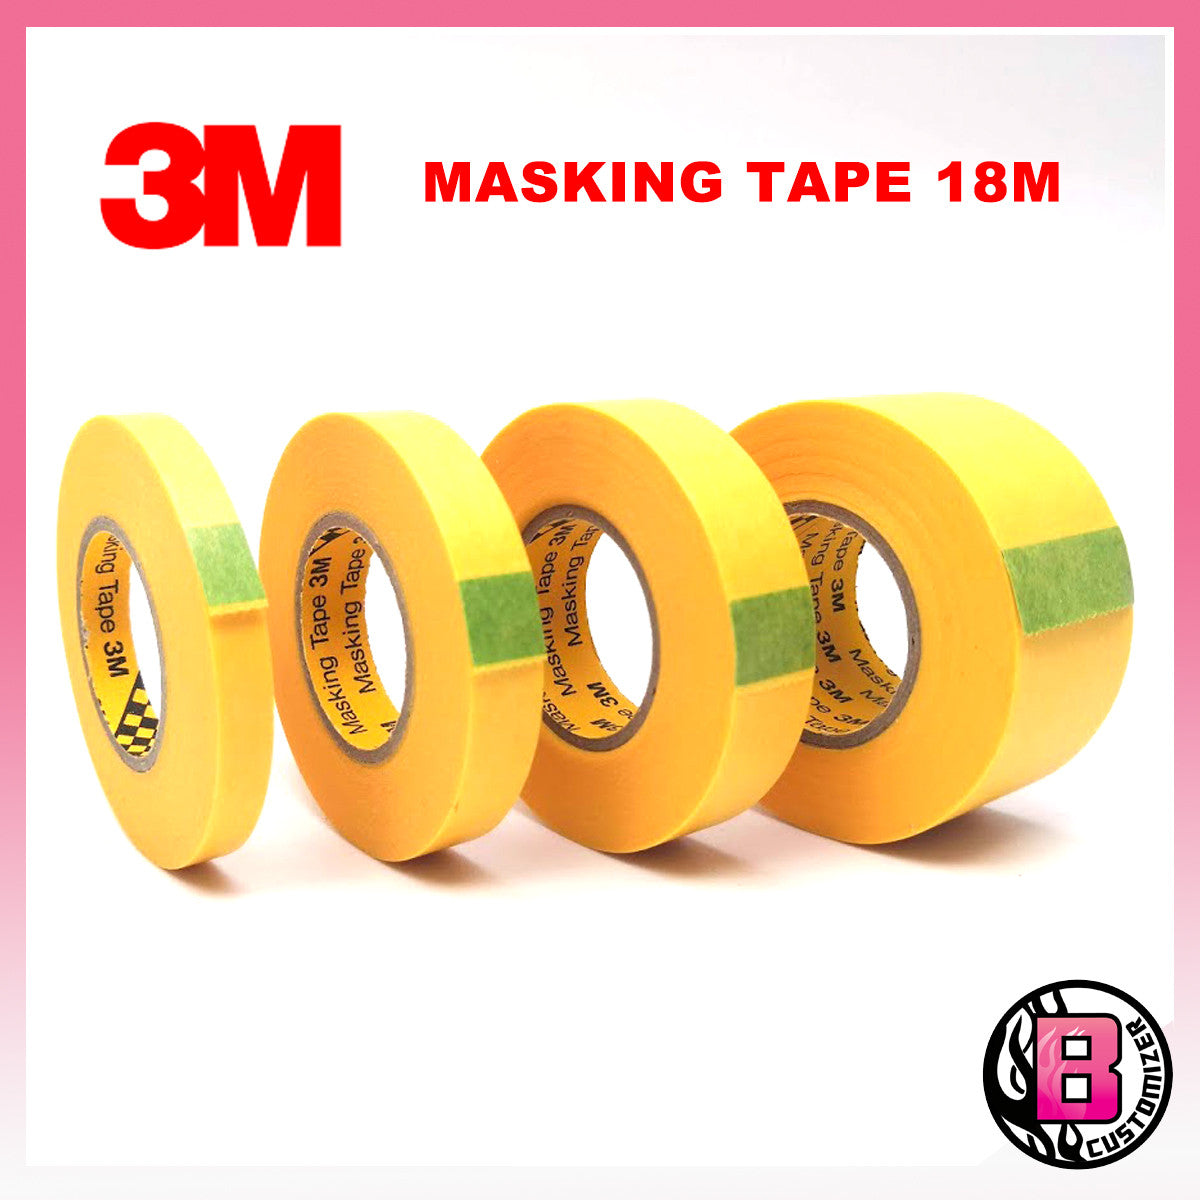 3M Masking tape (18 meter length)